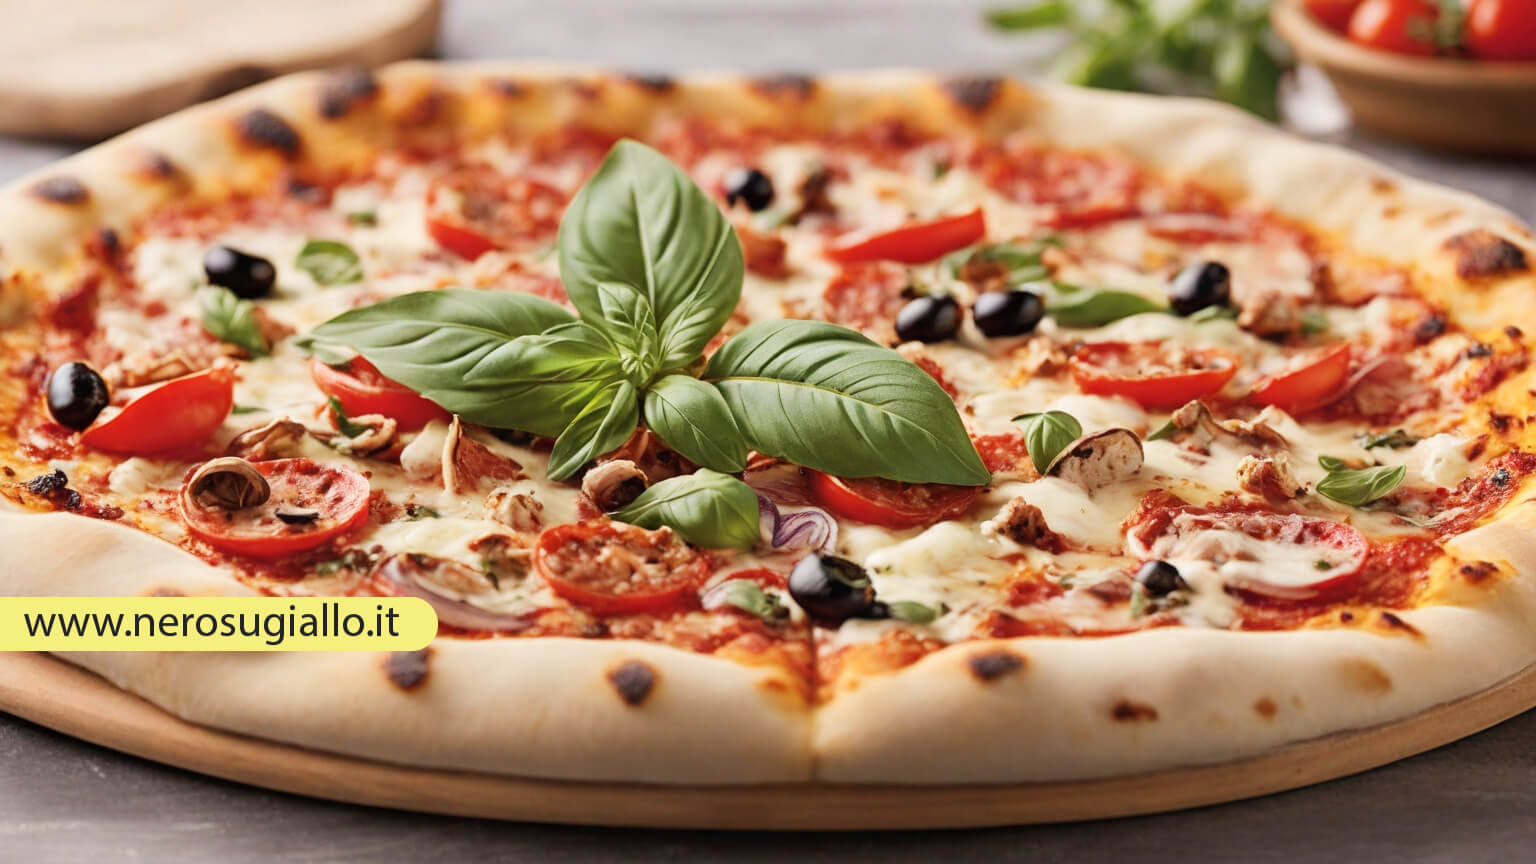 Al momento stai visualizzando Giornata Internazionale della Pizza Italiana